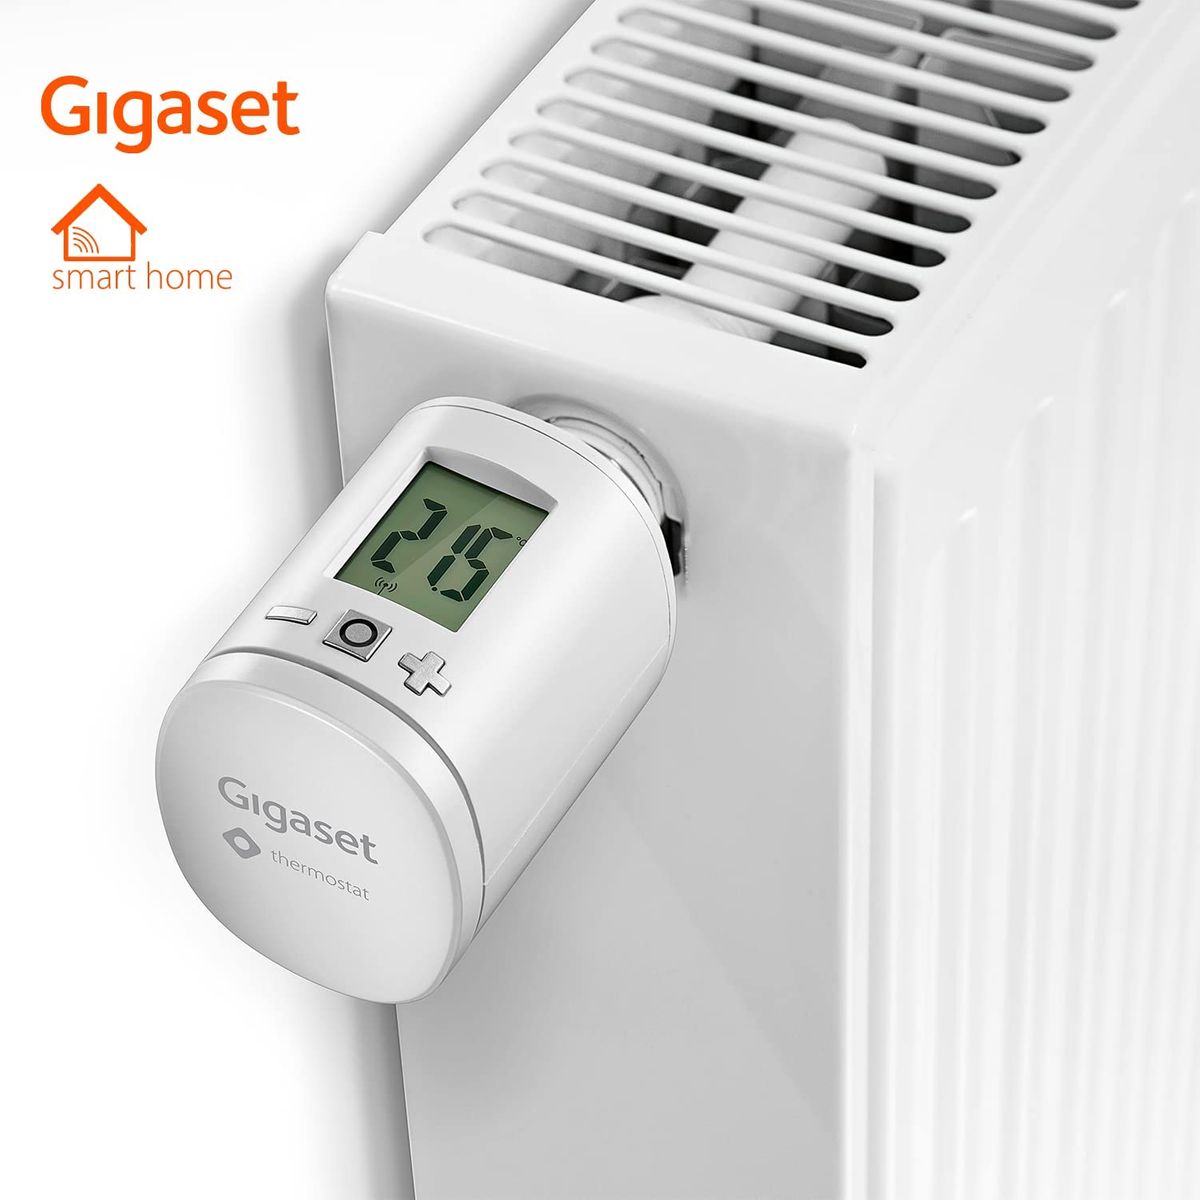 Gigaset Thermostat ONE X - Smart Home Erweiterung - Heizkörperthermostat für ein angenehmes Raumklima - regelt die Heizungstemperatur - spart Heizkosten - Home Connect Plus, Base erforderlich, weiß